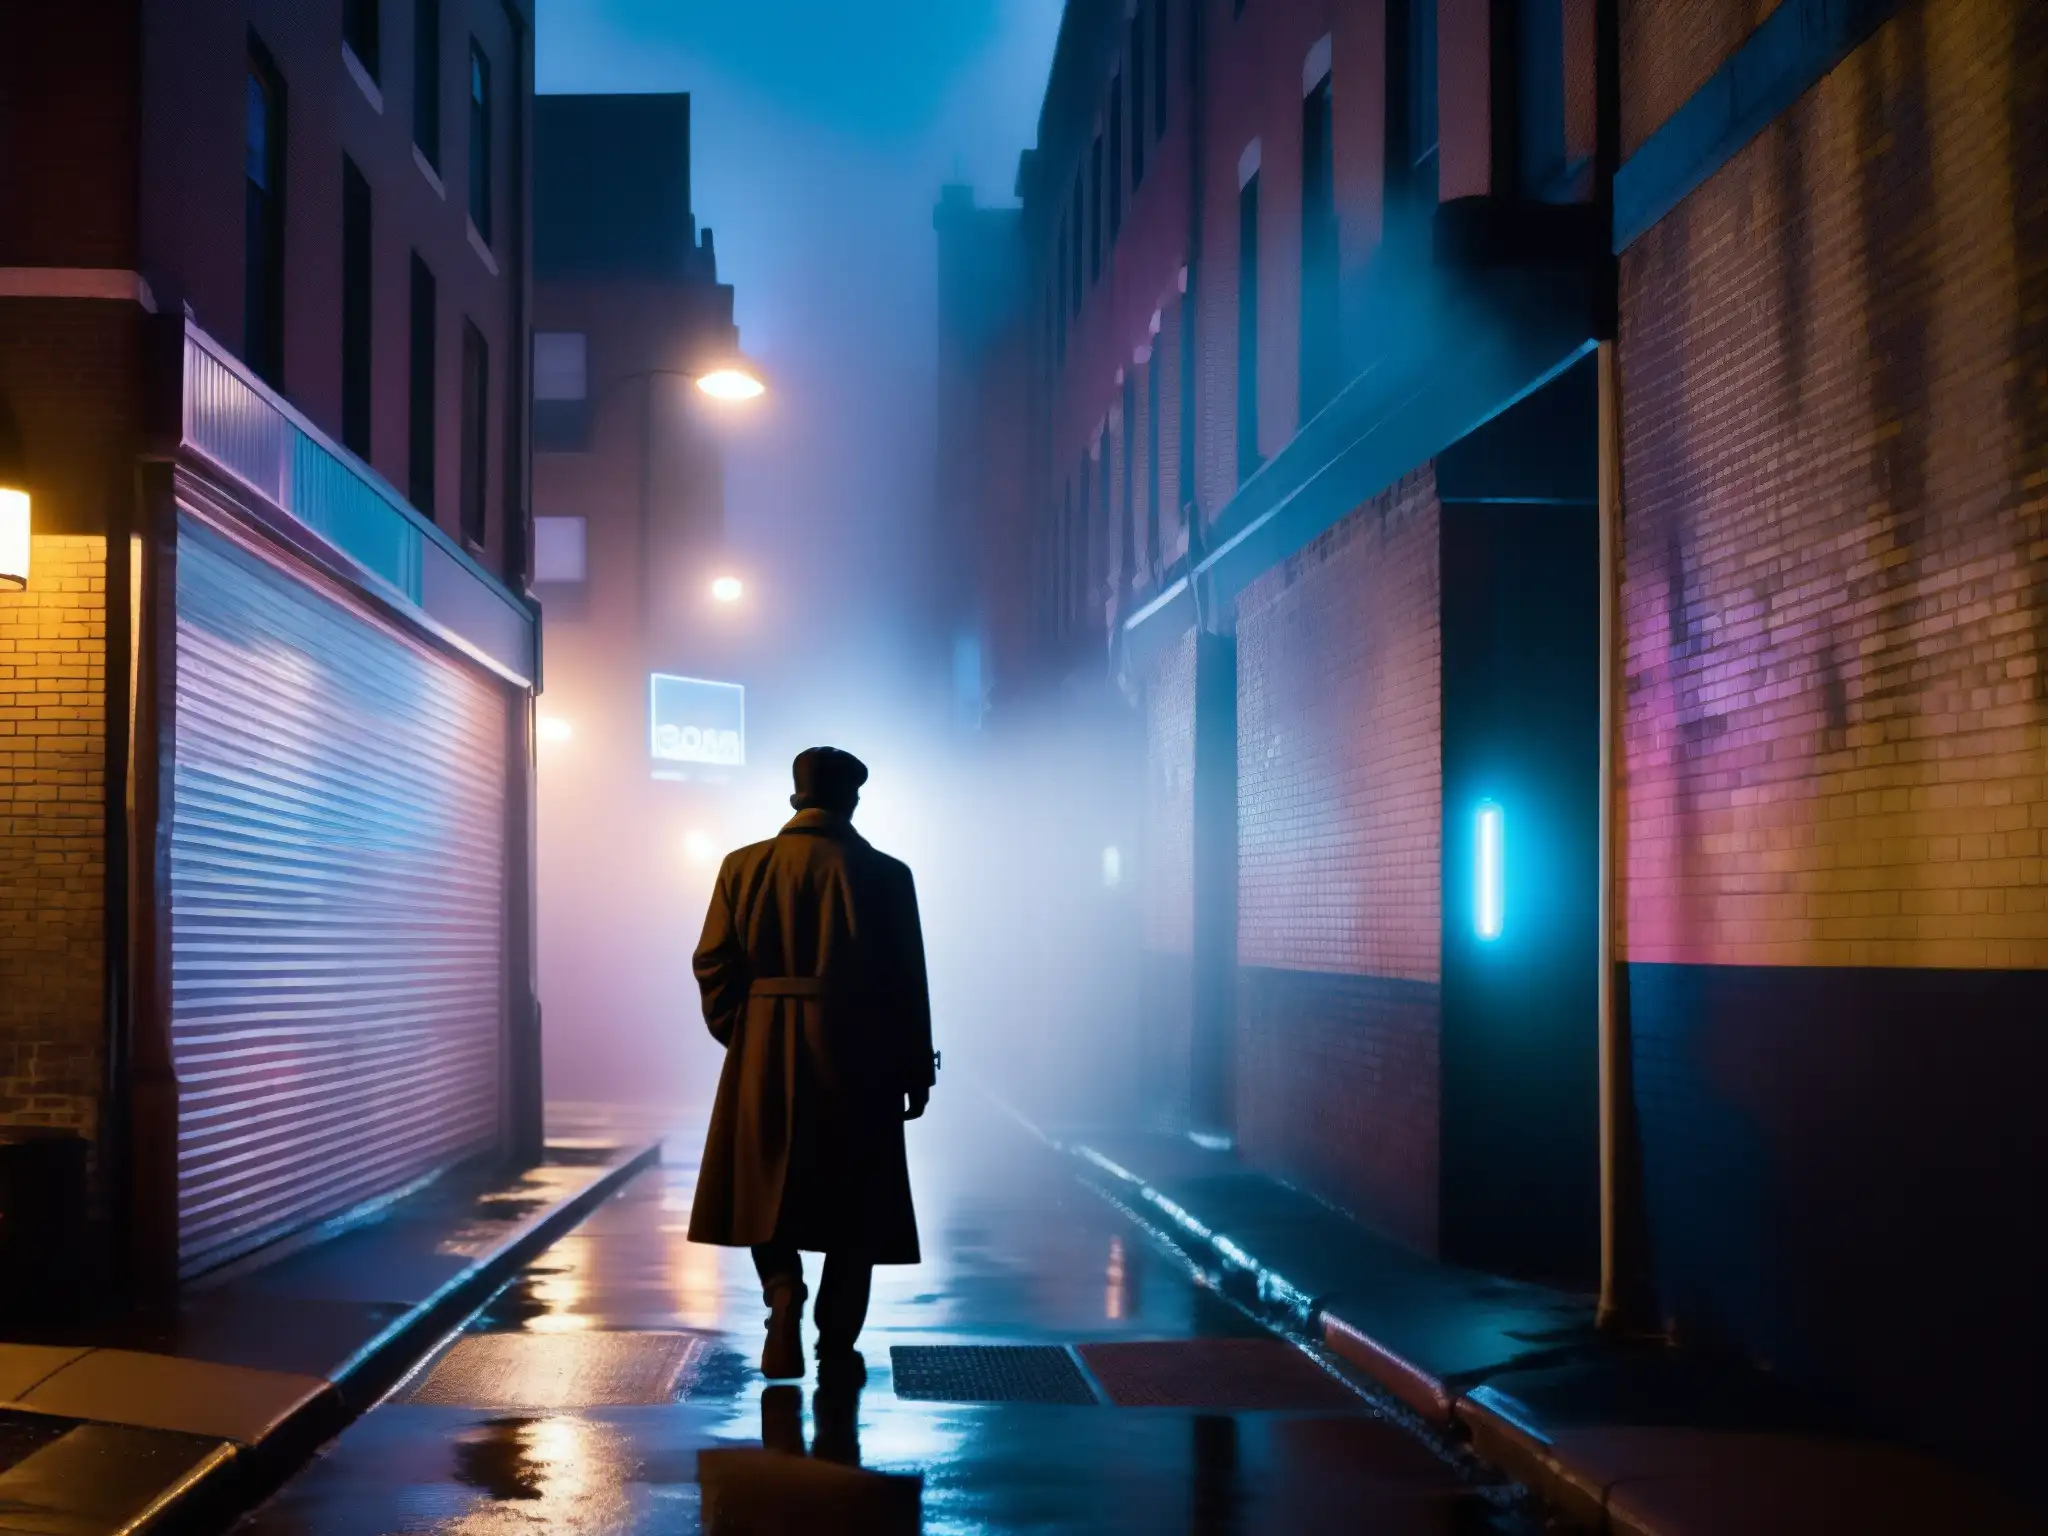 Bajo la luz tenue de la ciudad, una figura misteriosa se alza en un callejón, rodeada de neblina